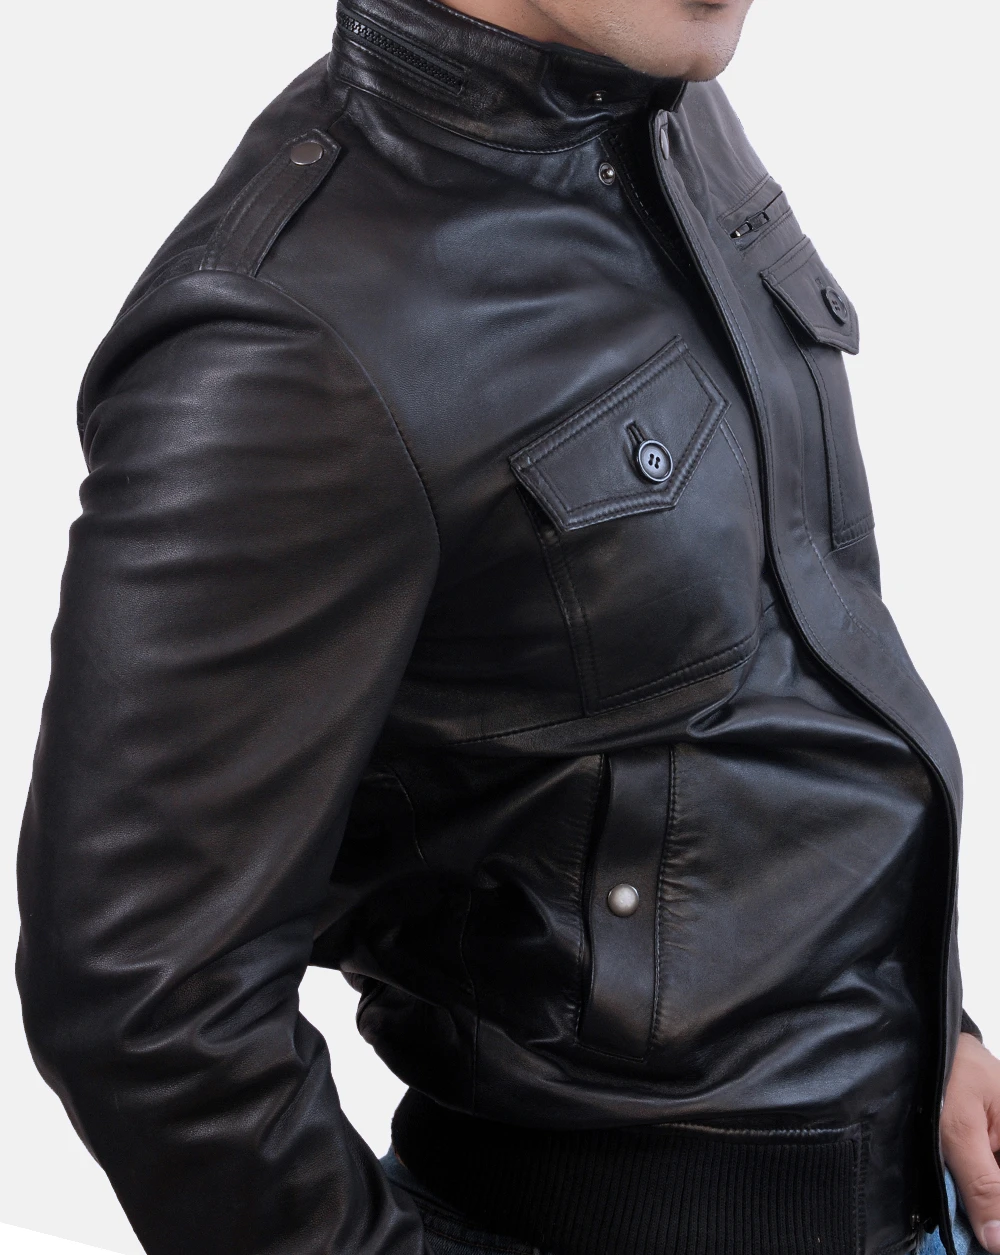 California Leather Jacket